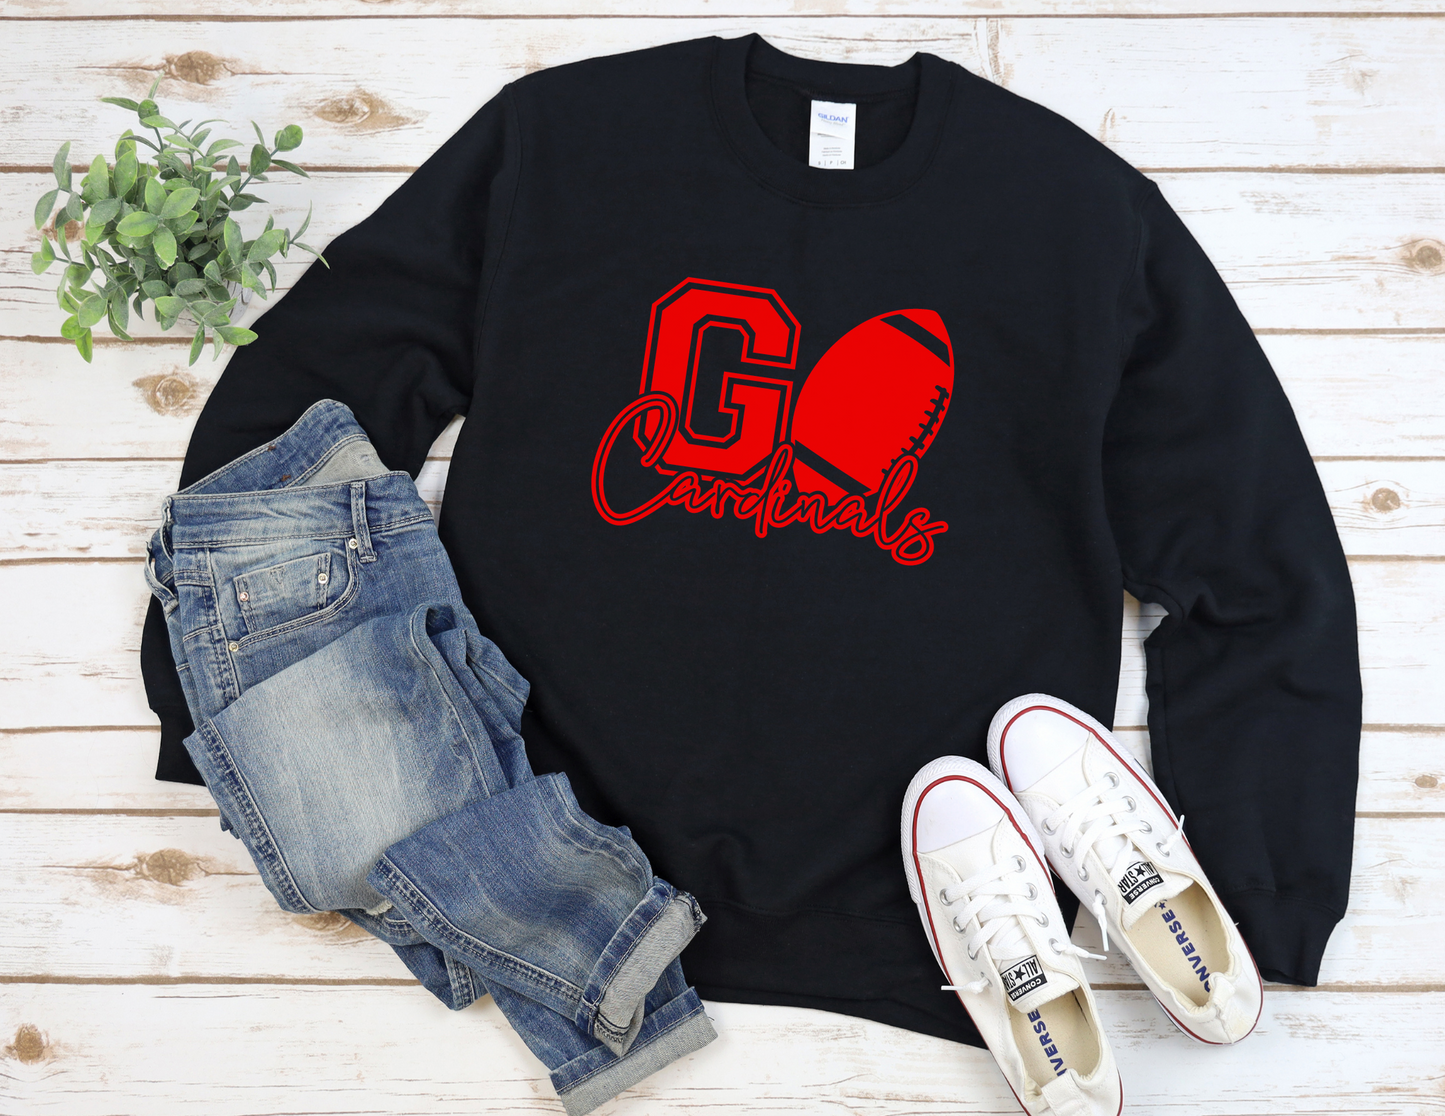 Go Cardinals Sweater